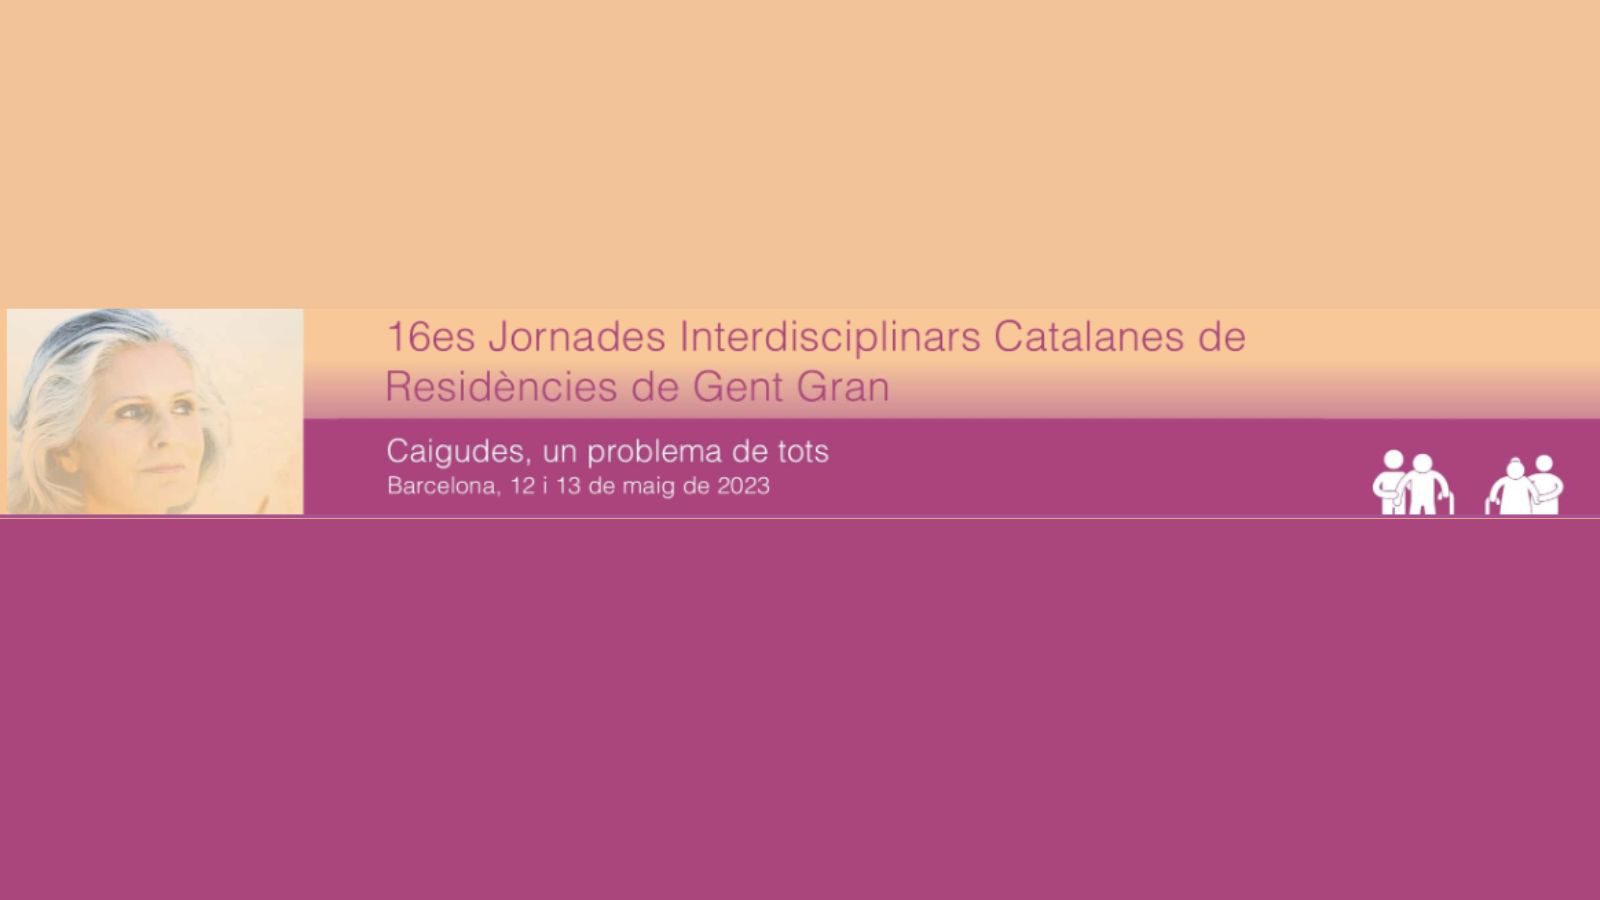 16es Jornades Interdisciplinars catalanes de residències de gent gran. Les caigudes accidentals.